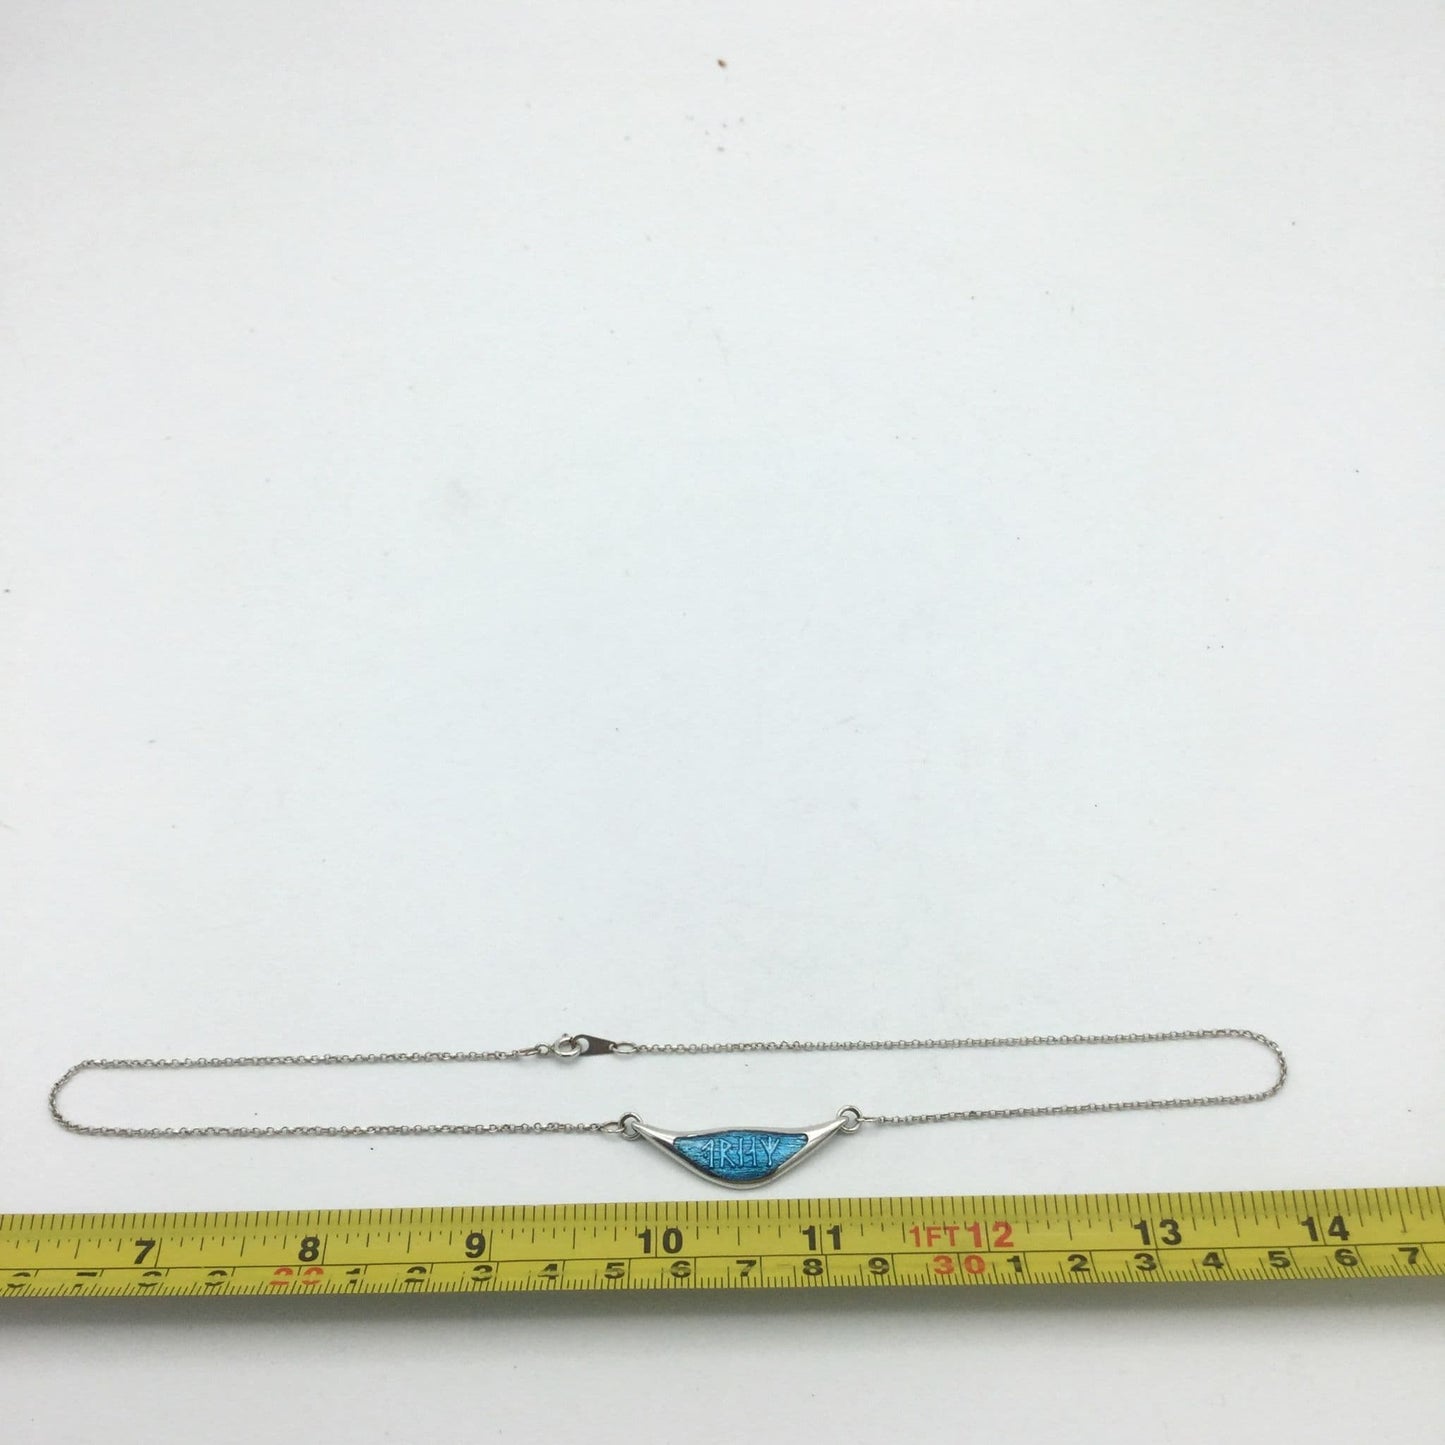 Blue Enamel Silver Pendant Necklace